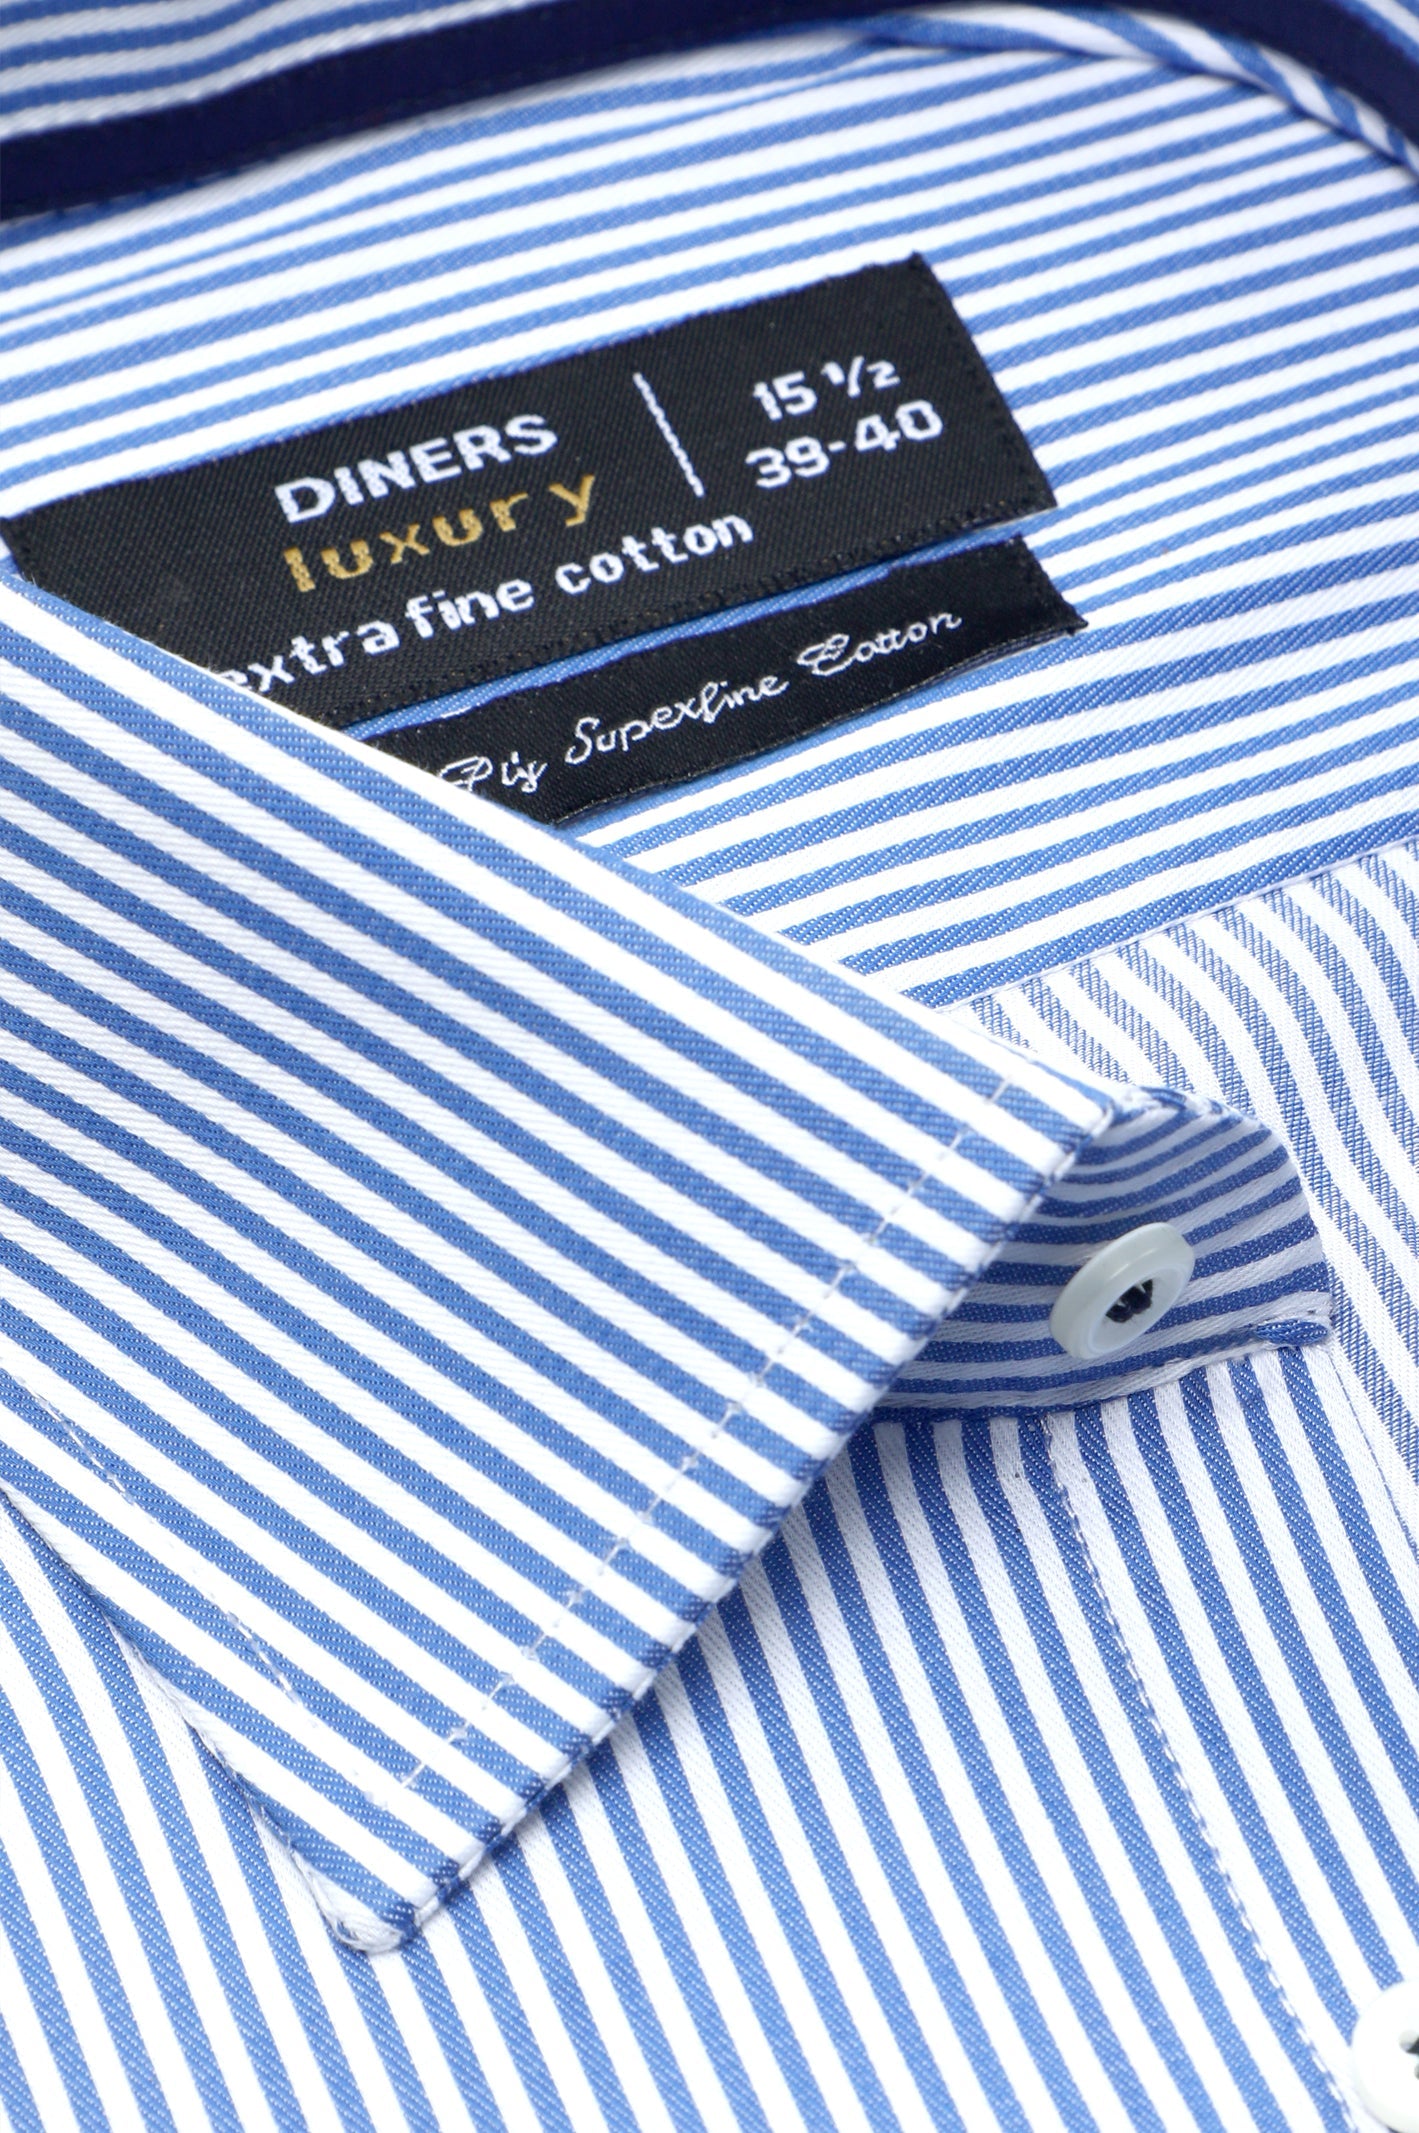 Formal Men Shirt SKU: AD27469-D-BLUE - Diners